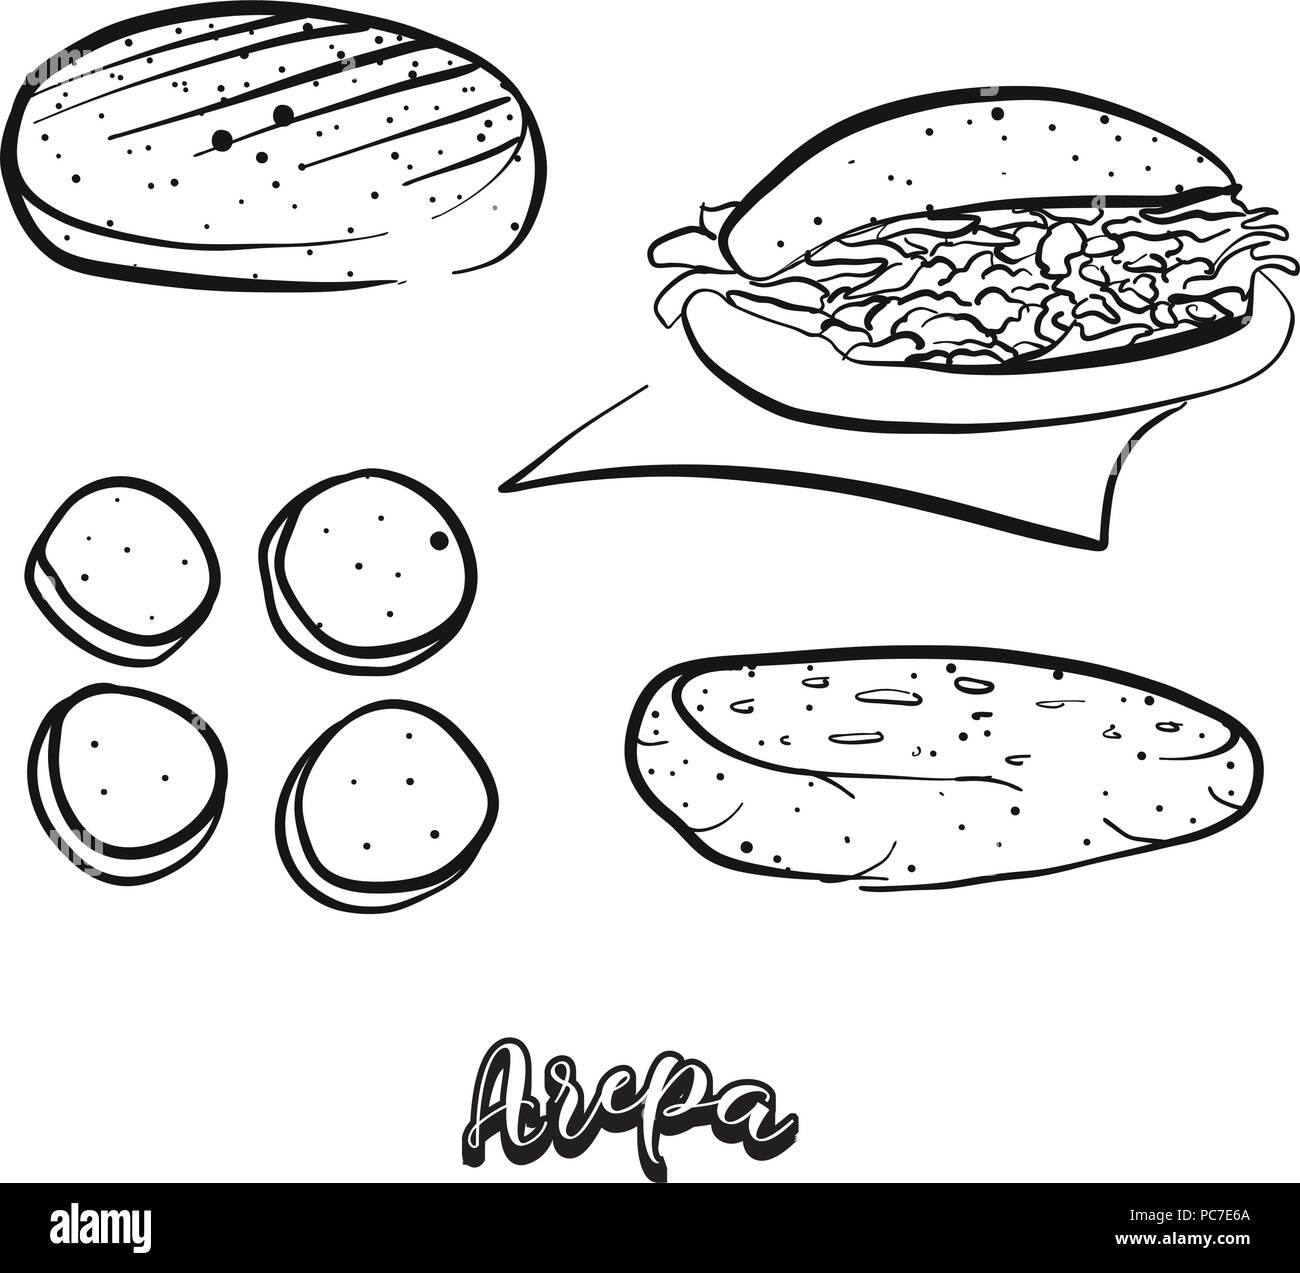 Croquis dessinés à la main, de l'Arepa de nourriture. Dessin vectoriel du Cornbread food, généralement connu en Amérique du Sud. Illustration du pain series. Illustration de Vecteur